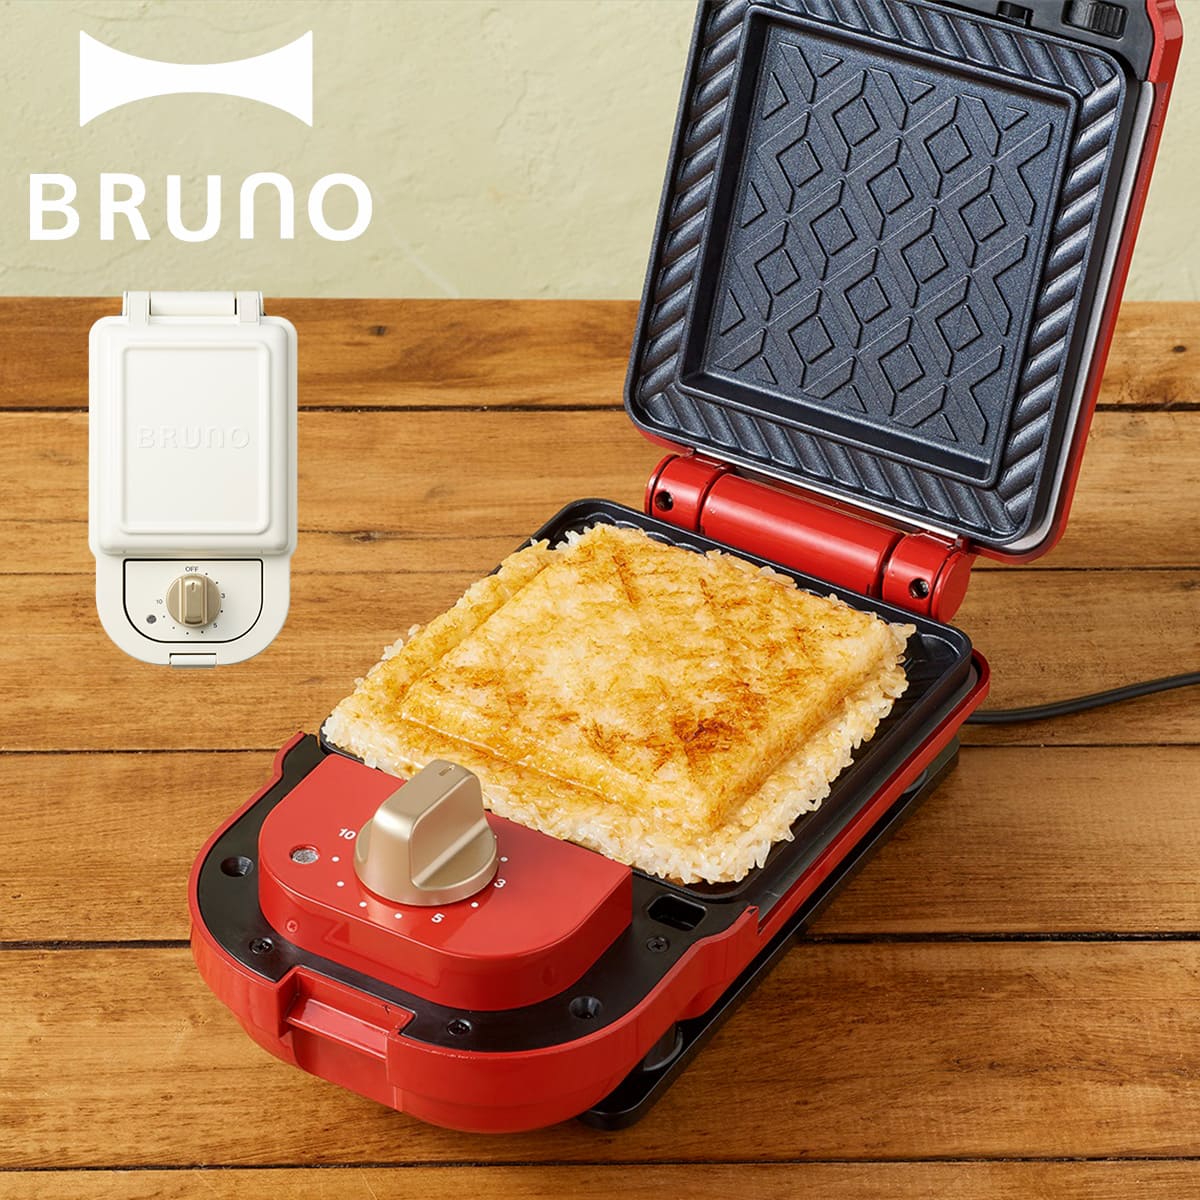 BRUNO ブルーノ ホットサンドメーカー シングル パンの耳まで焼ける コンパクト タイマー 朝食 プレート パン トースト 家電 ホワイト レッド 白 BOE043